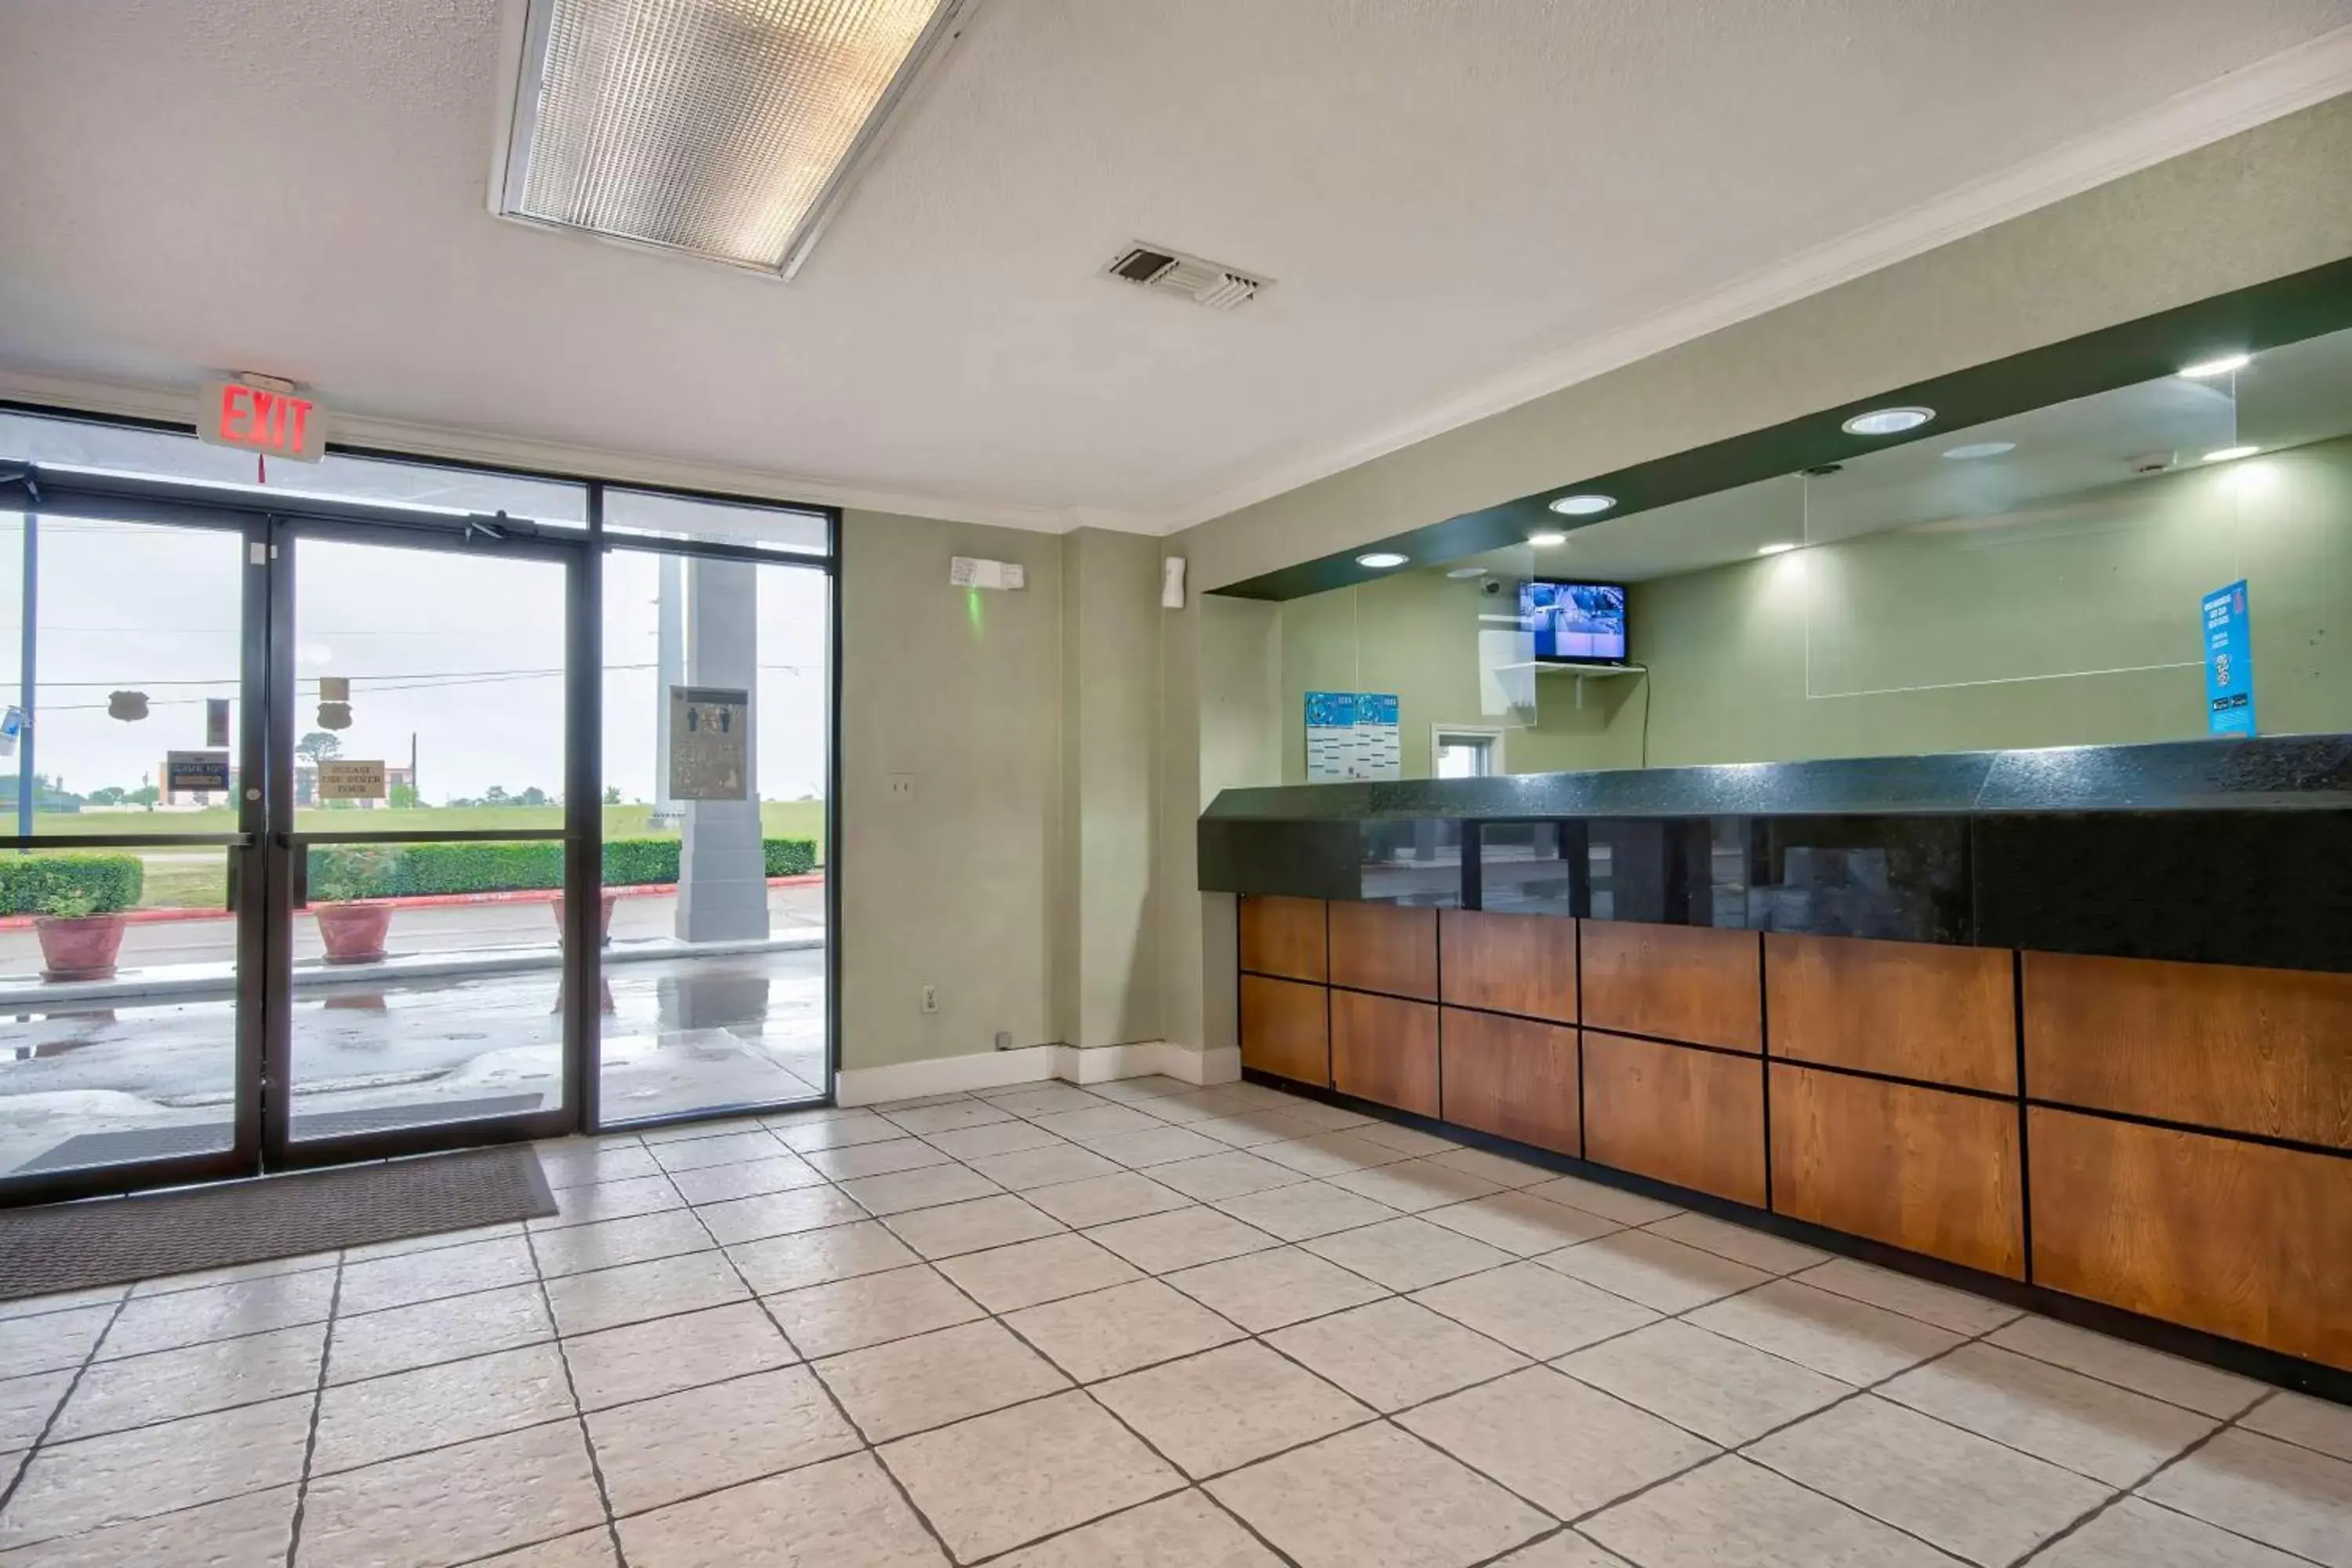 Lobby or reception, Lobby/Reception in Motel 6 Texarkana, TX